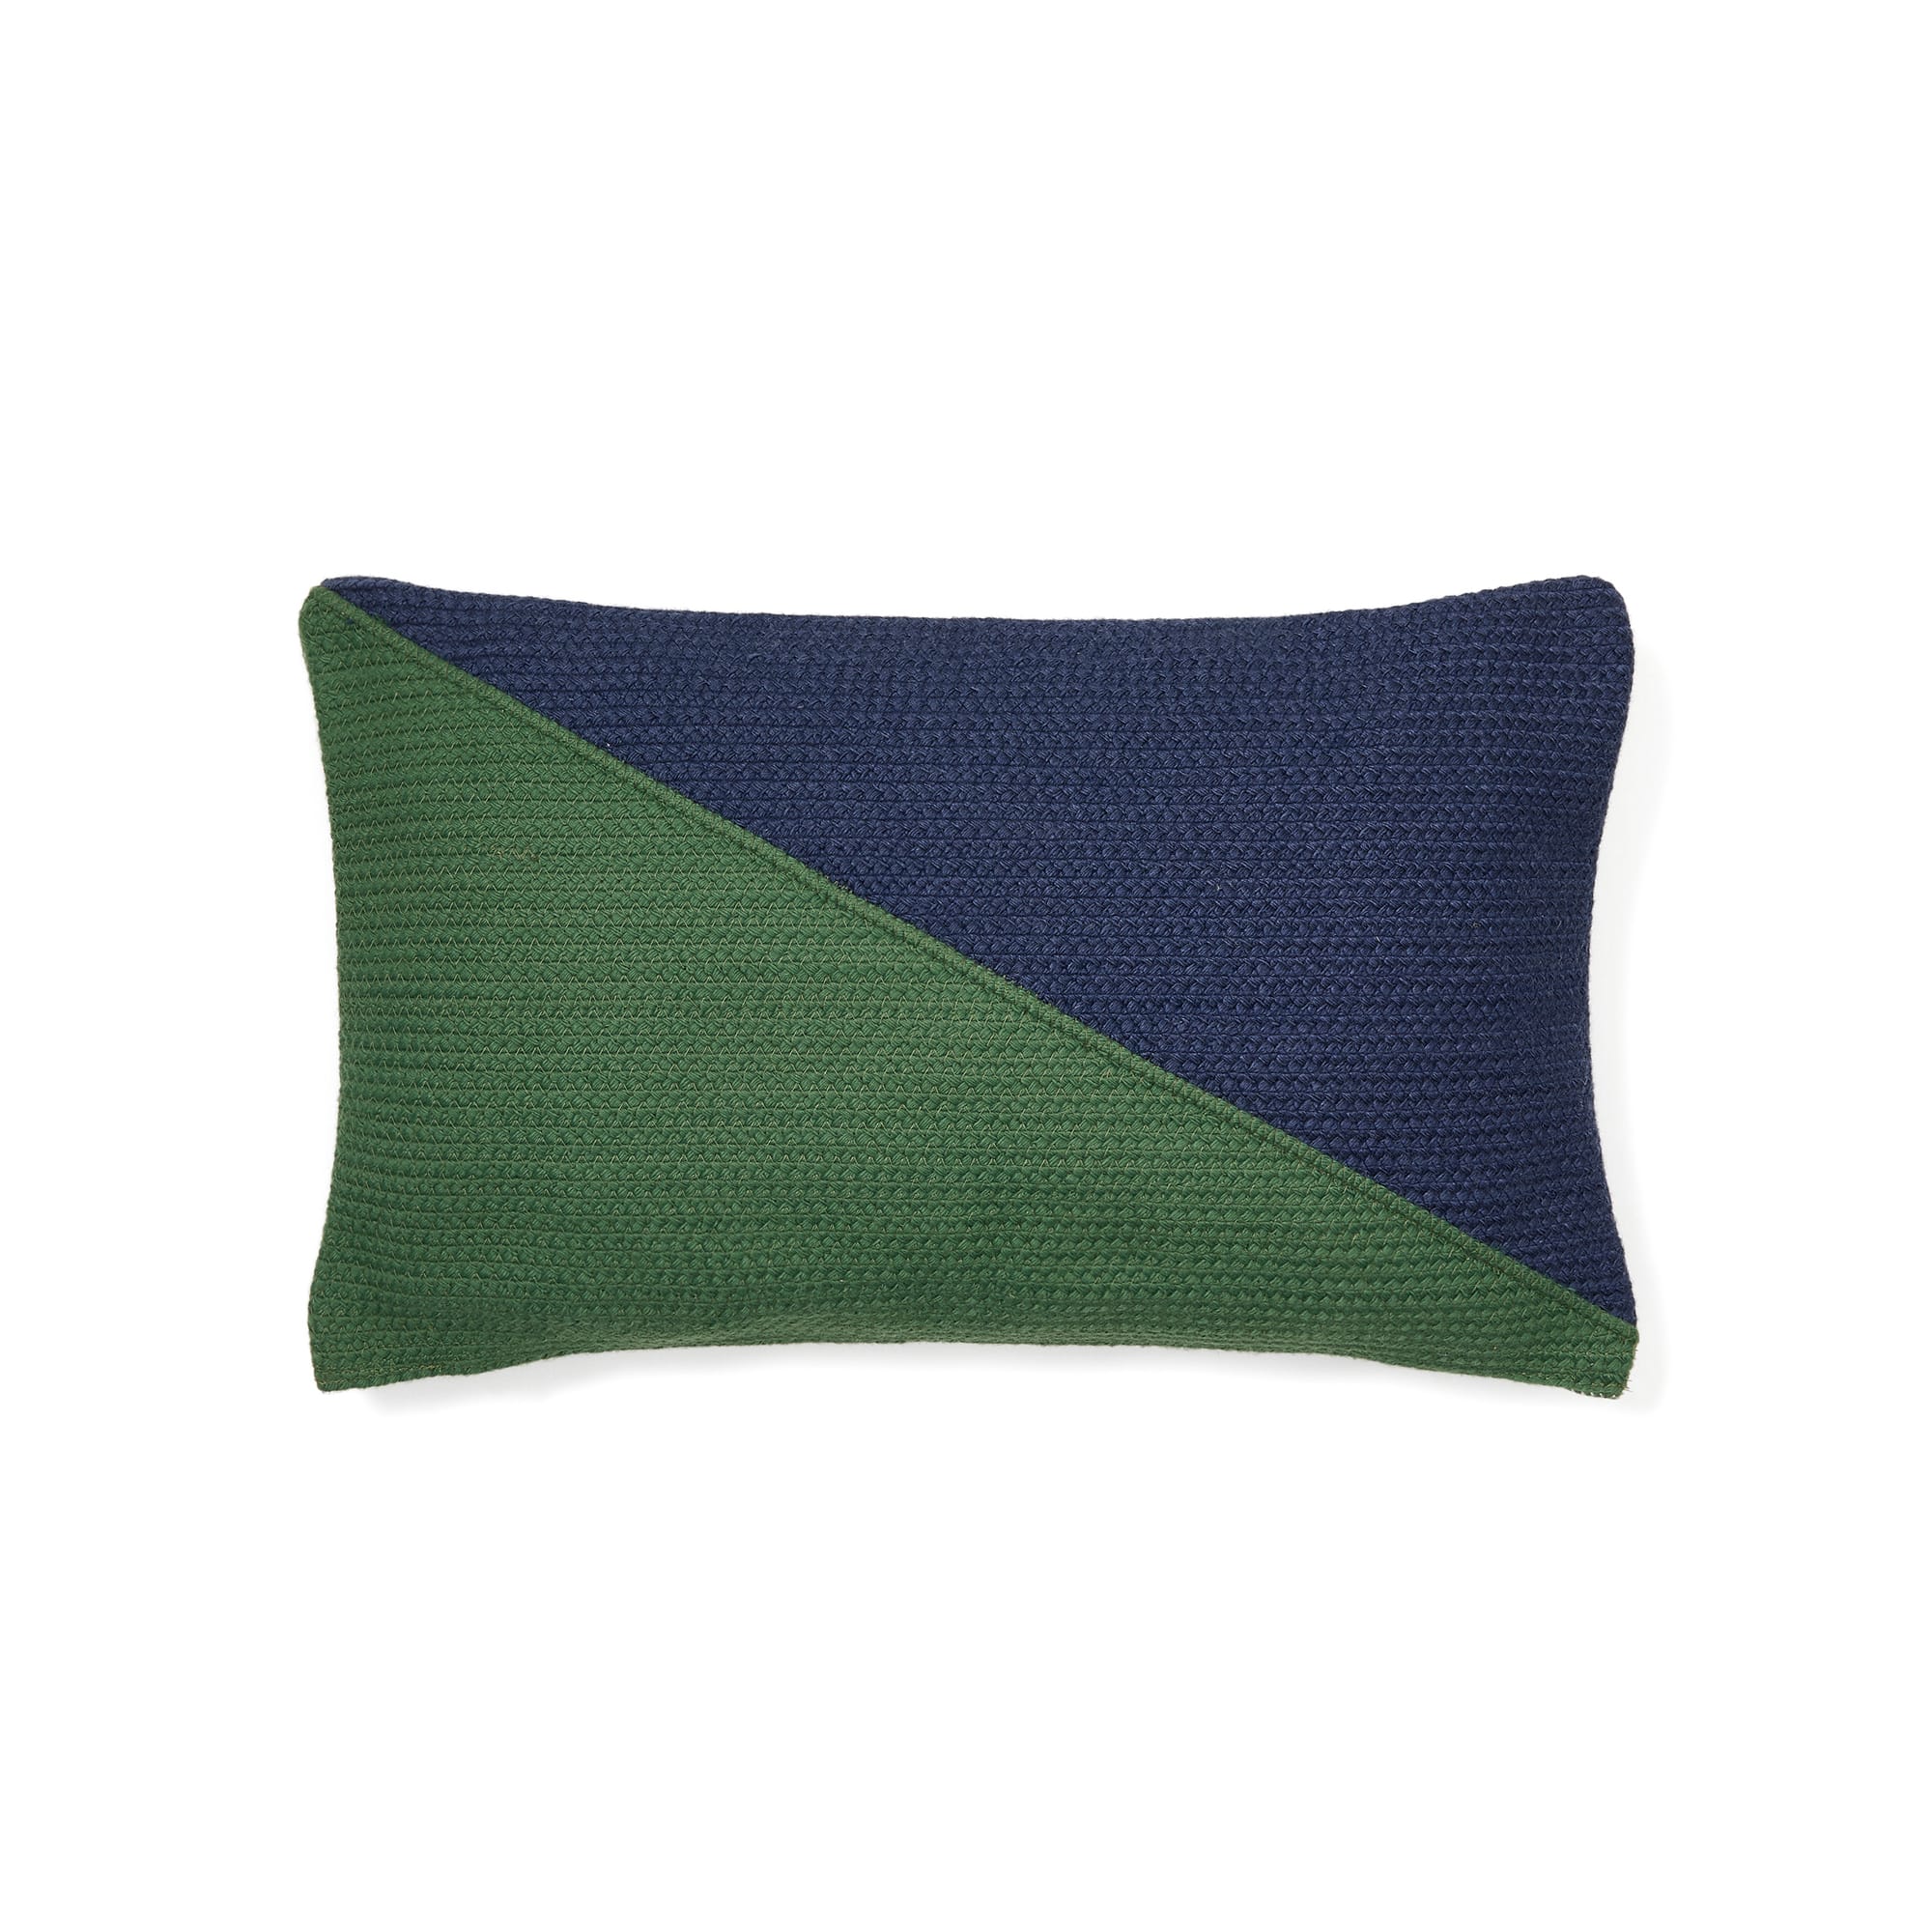 Saigua cushion cover with green and blue diagonal stripes, 100% PET, 30 x 50 cm